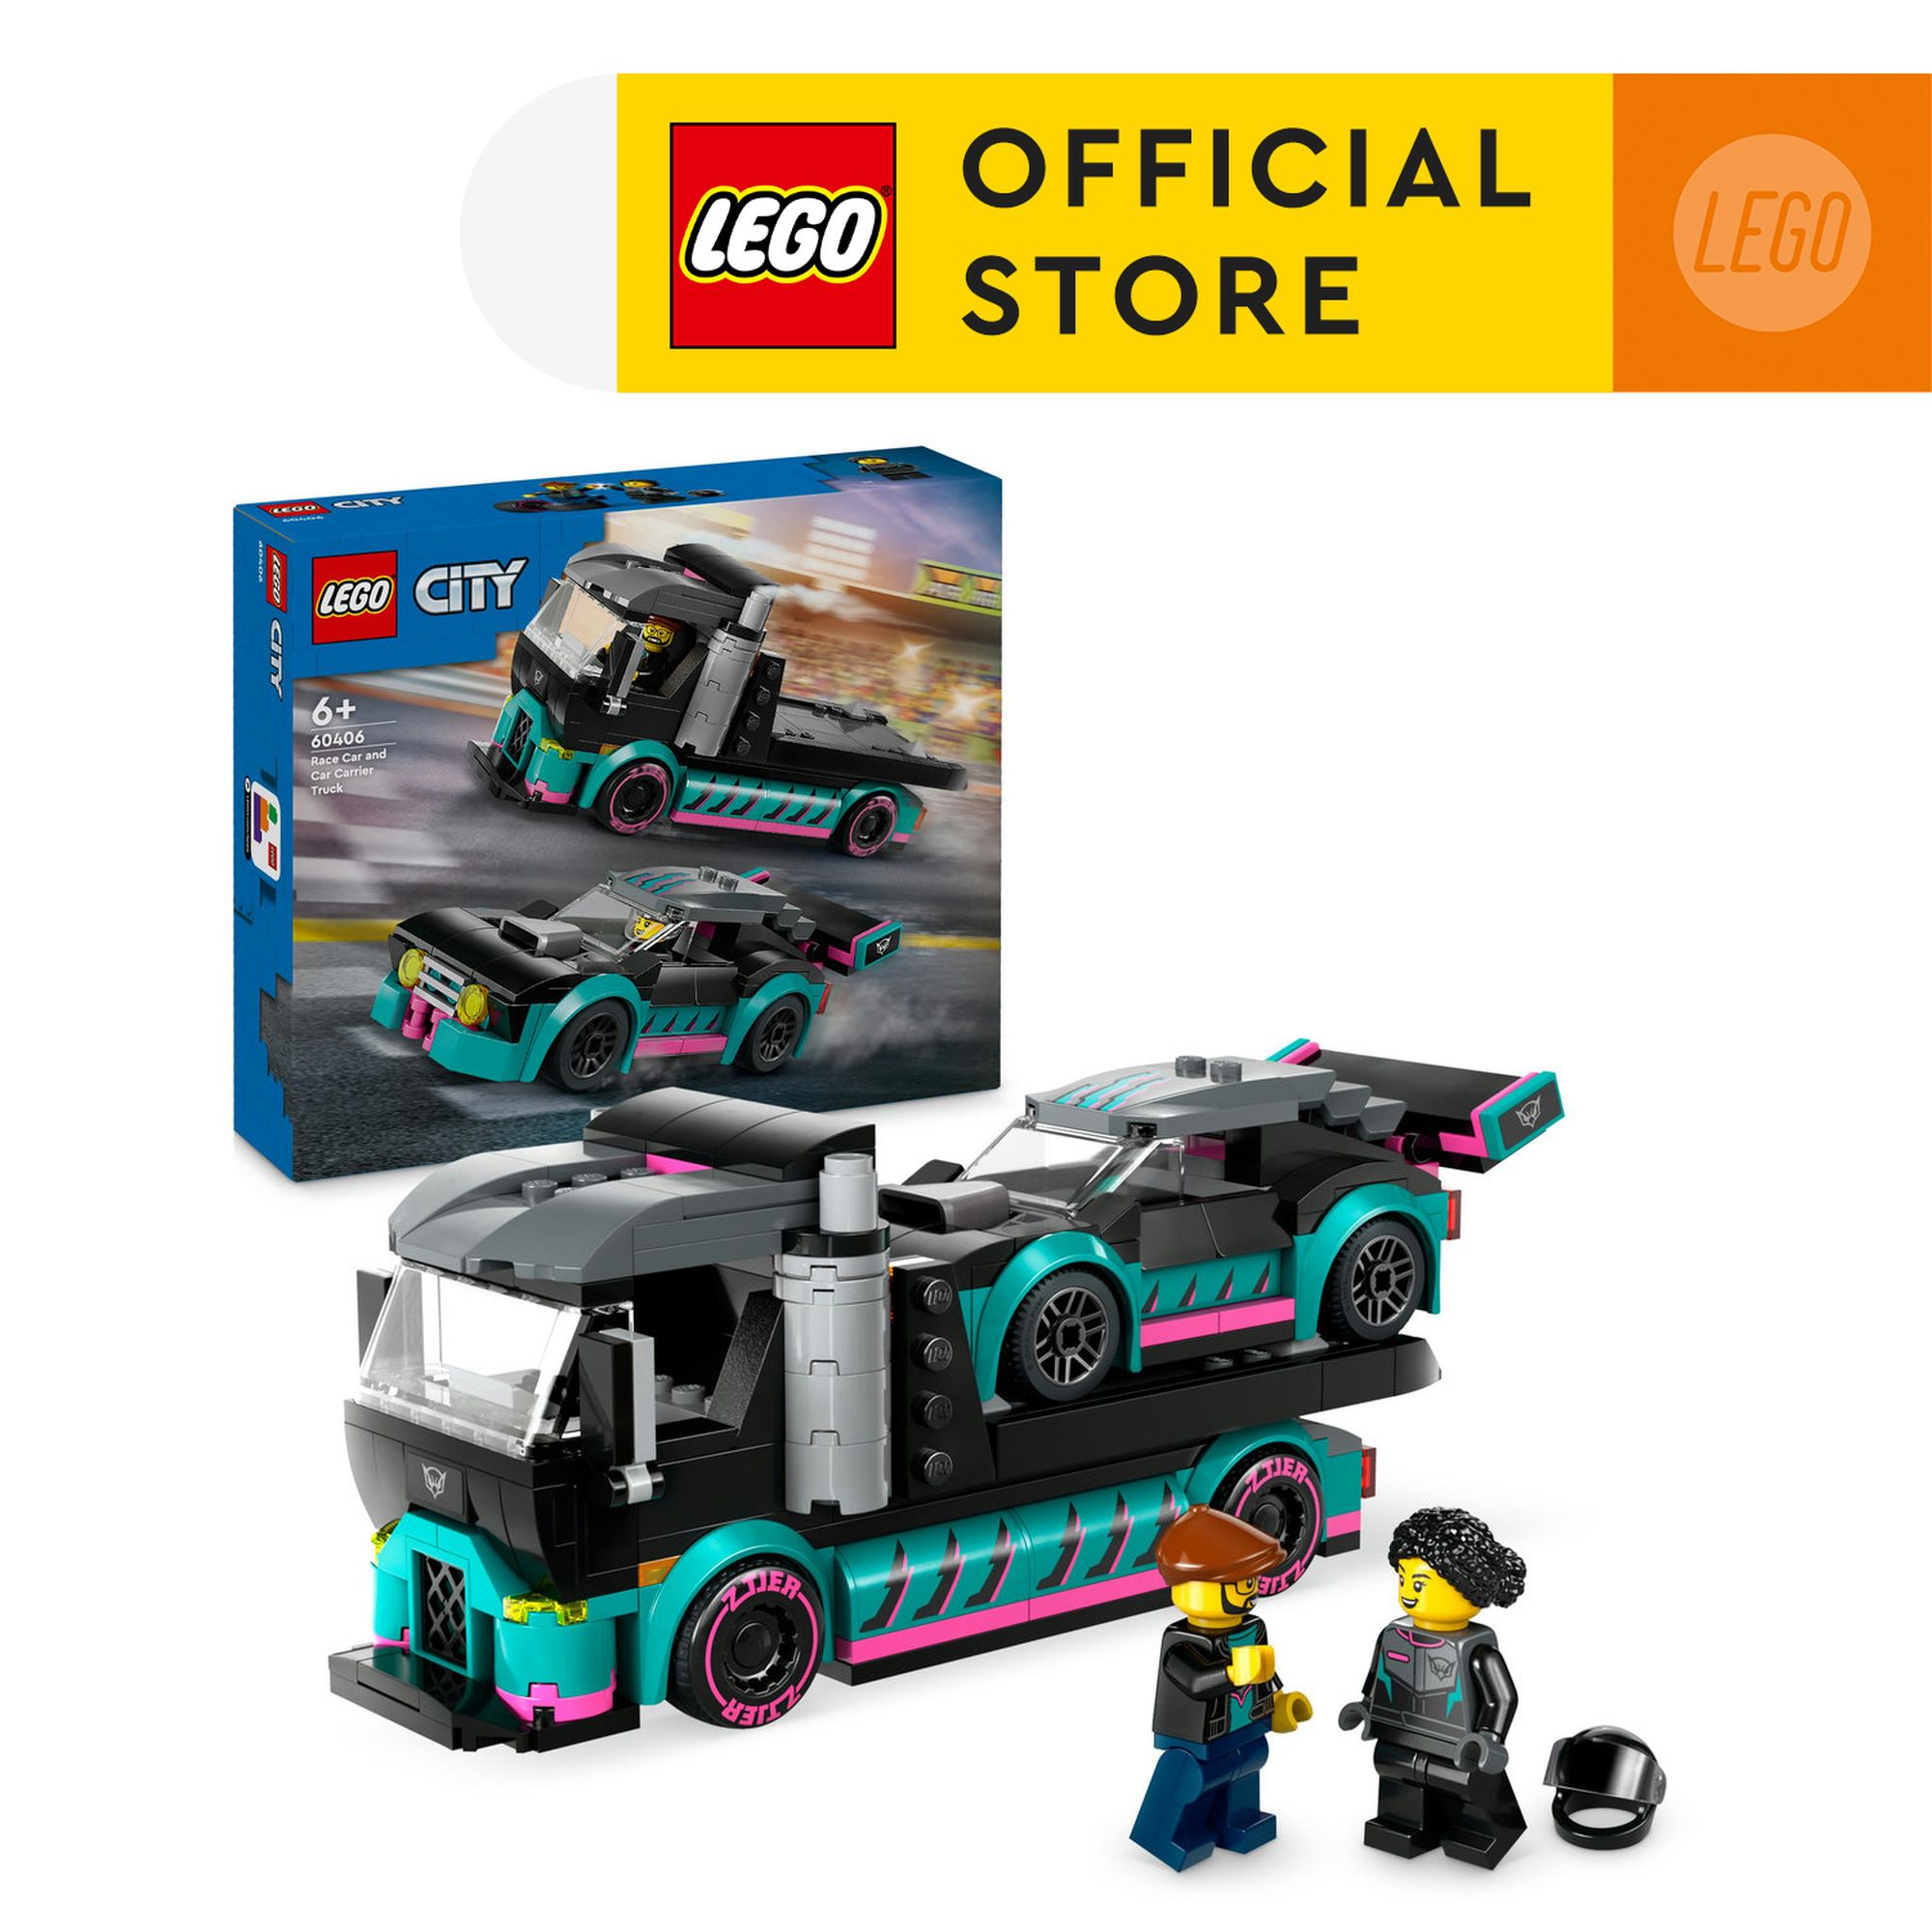 LEGO CITY 60406 Đồ chơi lắp ráp Xe tải vận chuyển xe đua (328 chi tiết)